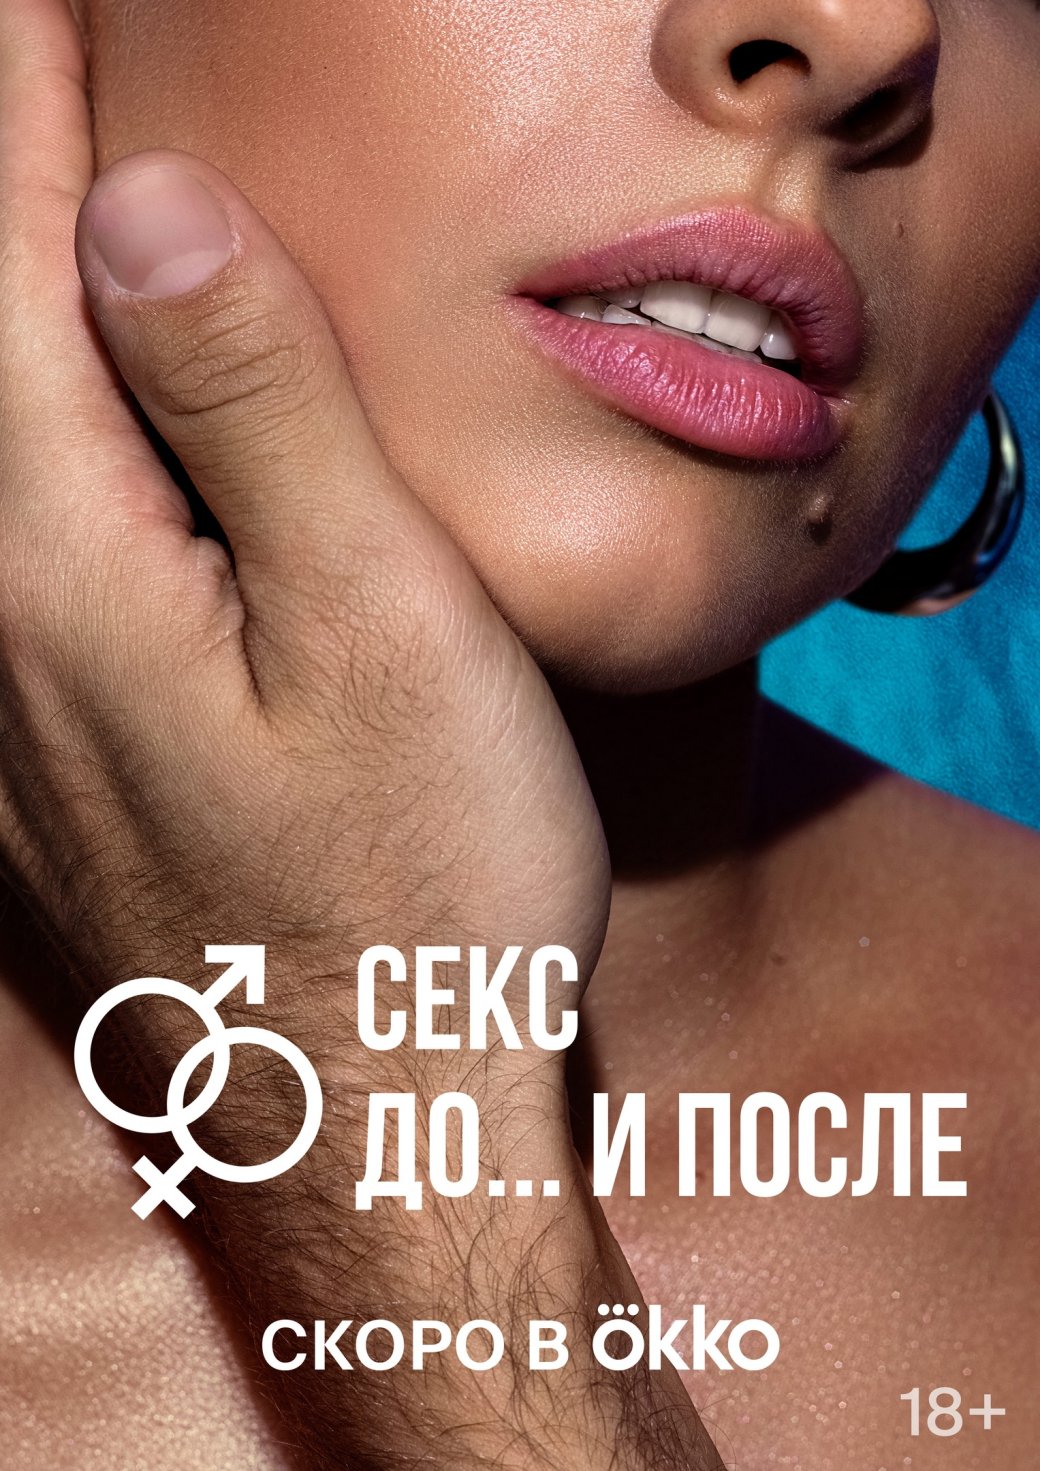 Галерея Онлайн-кинотеатр Okko показал тизер и постеры сериала «Секс До и после» - 3 фото